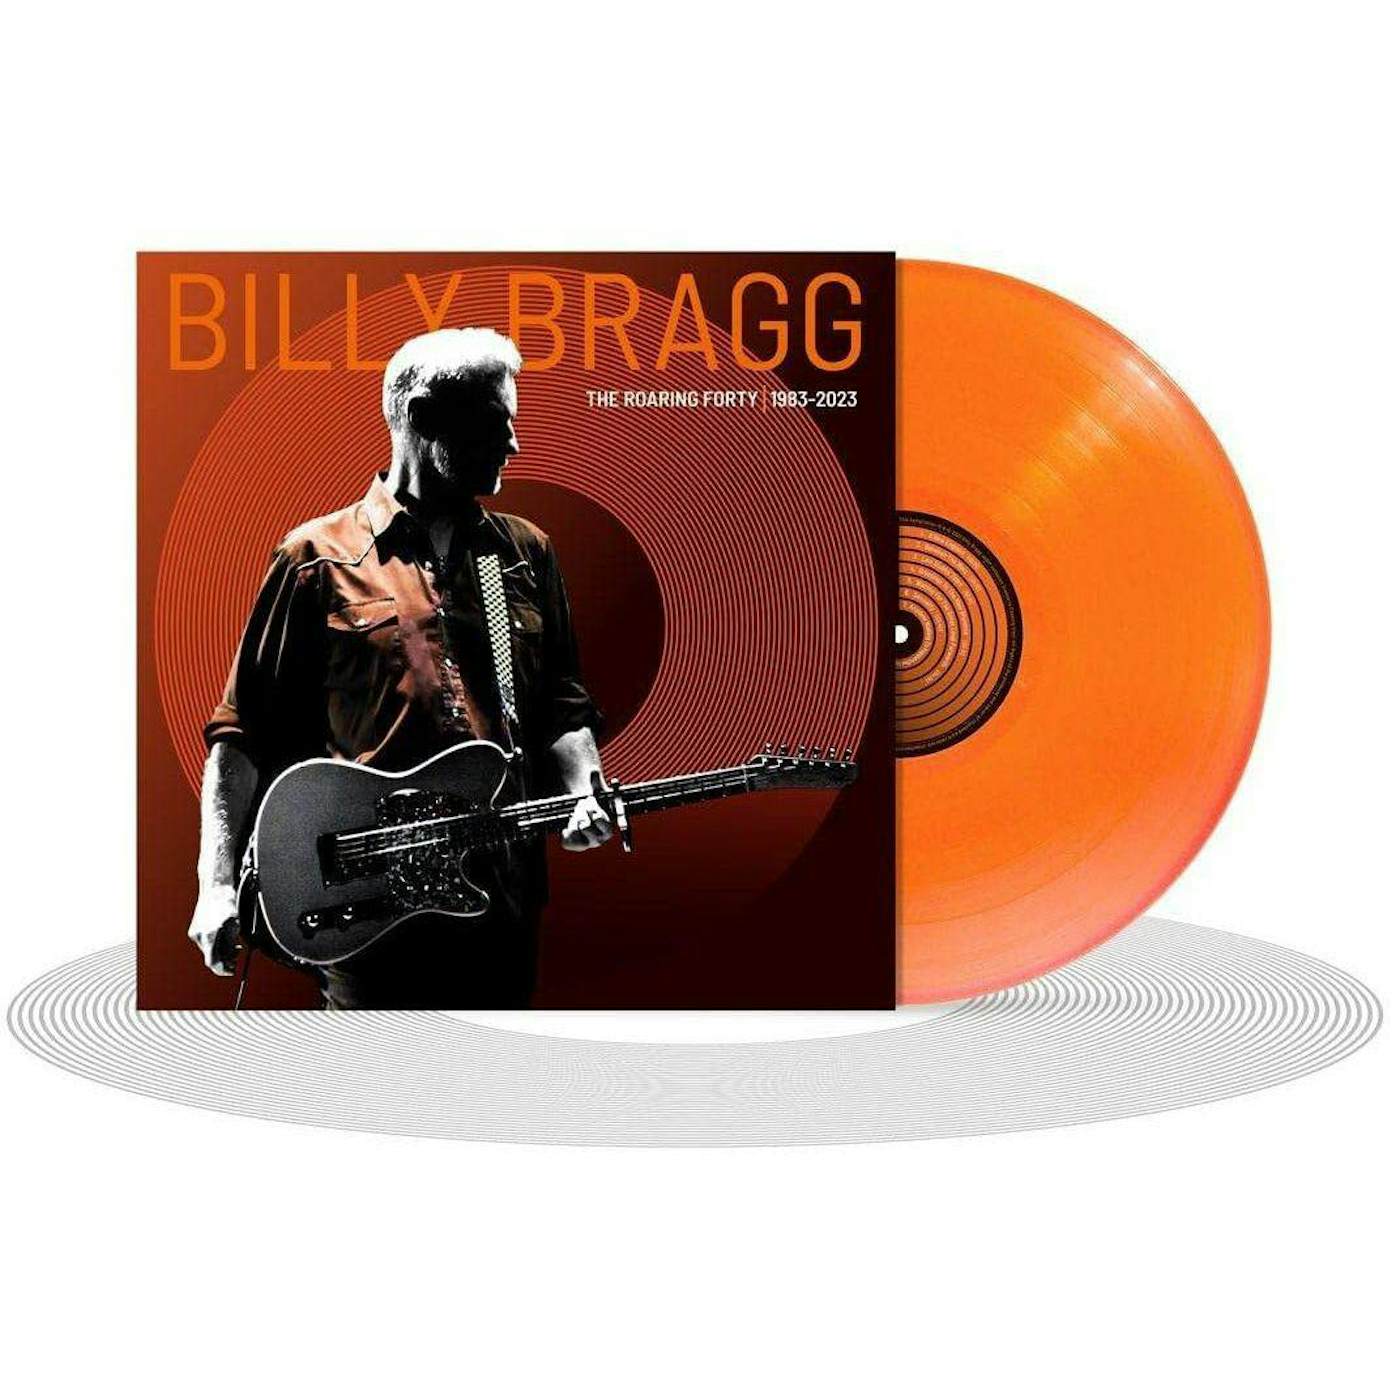 Billy Bragg Roarin Forty 1983-2023 (Orange Vinyl) (Import) Vinyl Record